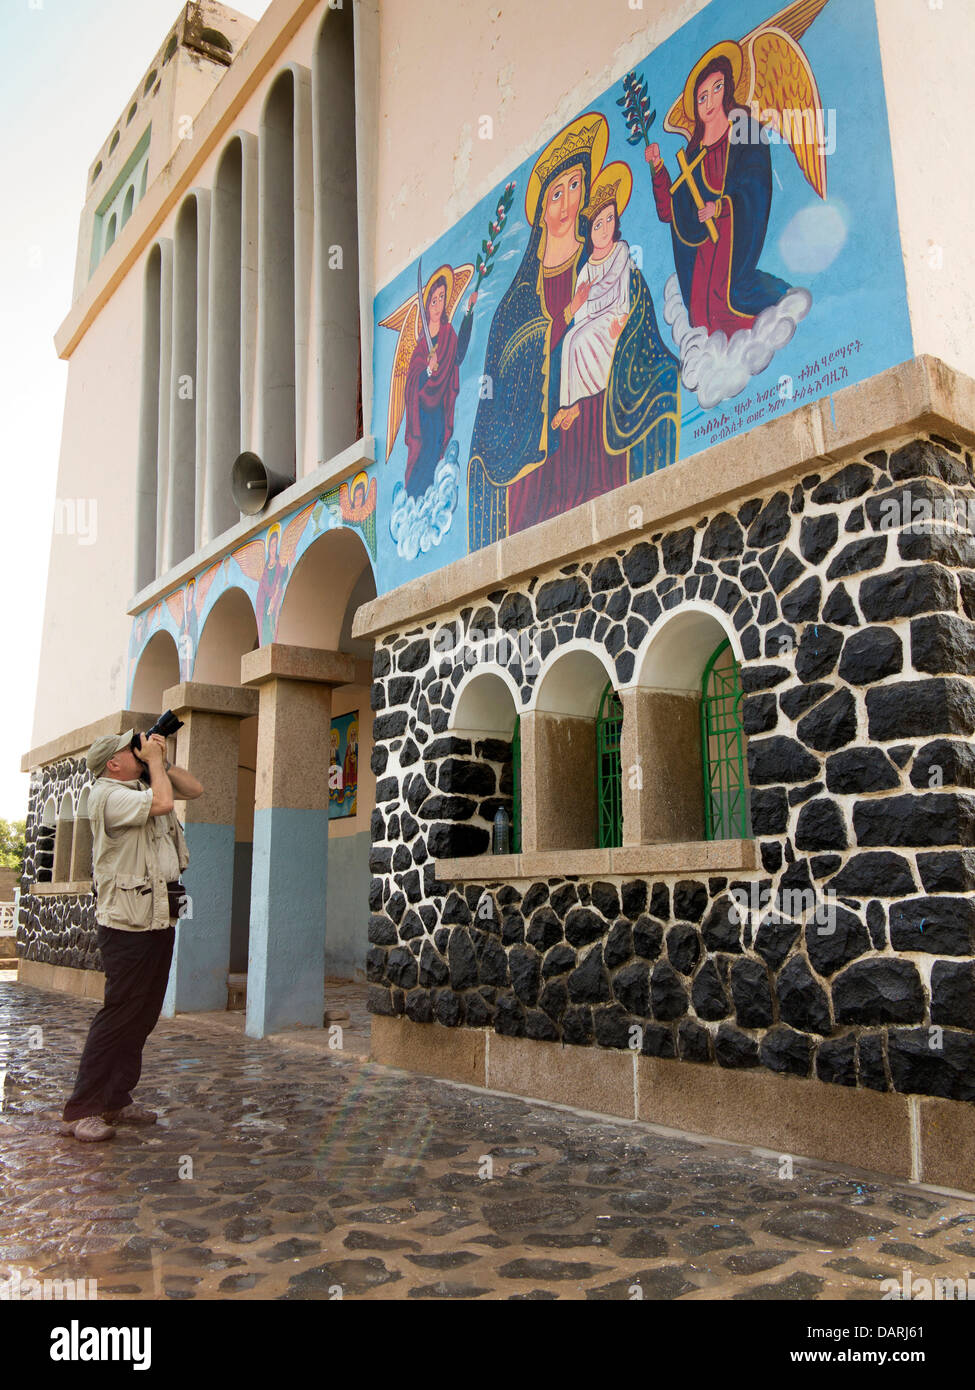 Afrika, Eritrea, Massawa, Tualud, Str. Marys Kathedrale Kirche westlichen Touristen fotografieren Jungfrau Maria Wandbild malte Stockfoto